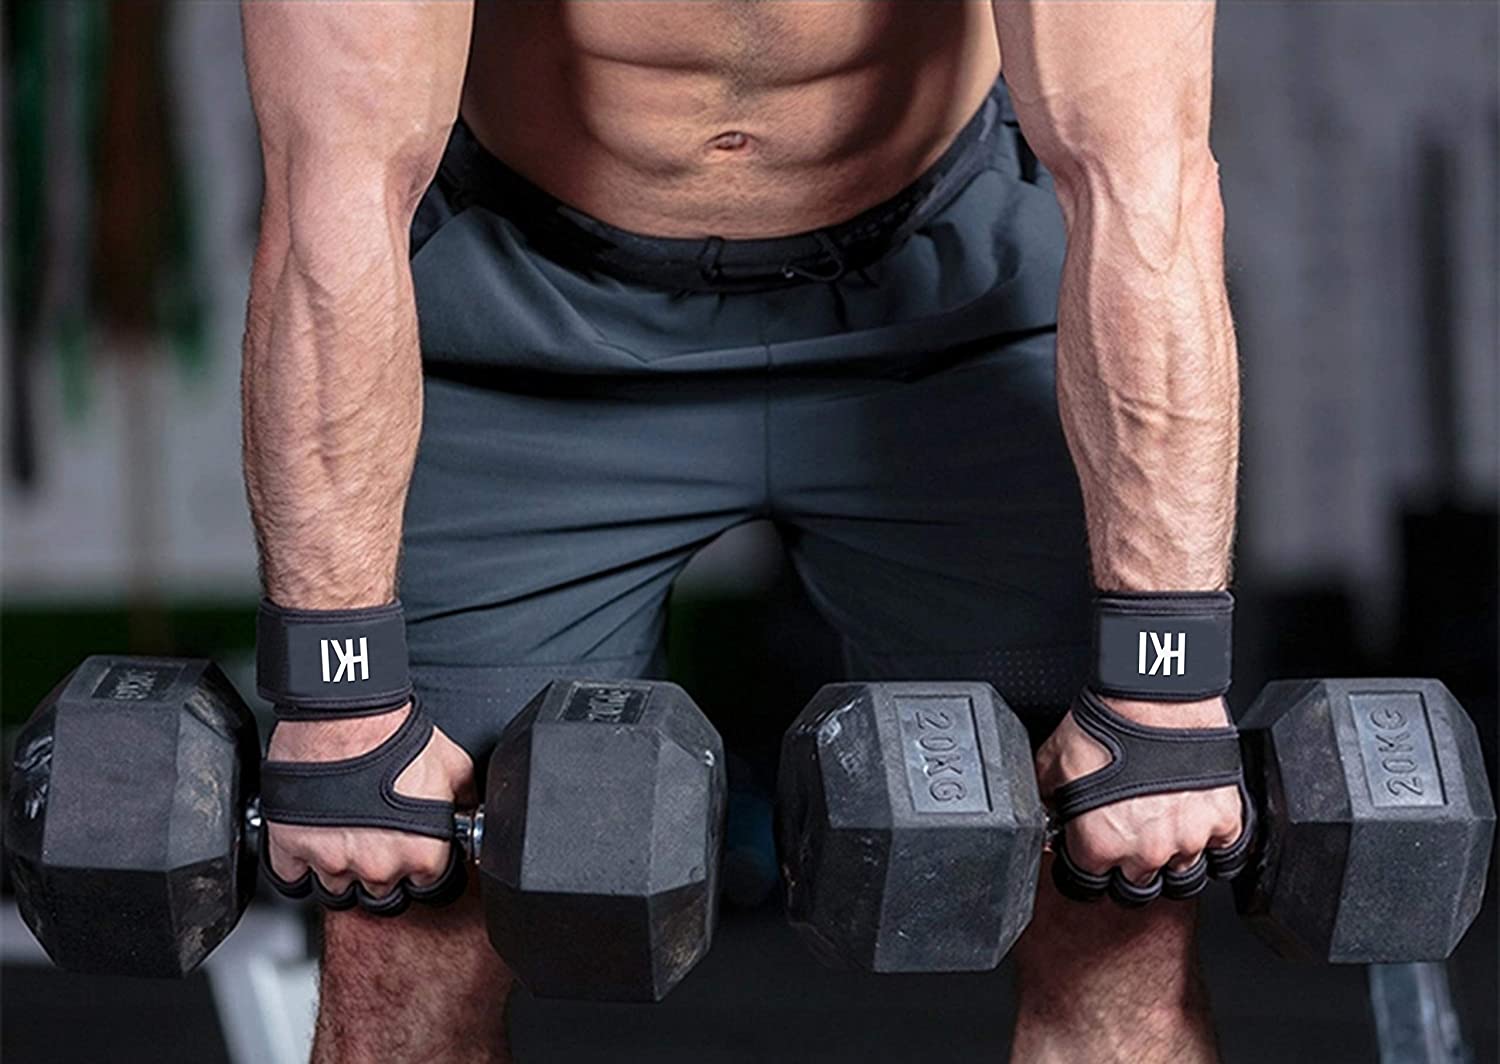 Best Gym Accessories for Men : जिम के लिए बेस्ट प्रोडक्ट्स, देखिये फुल लिस्ट